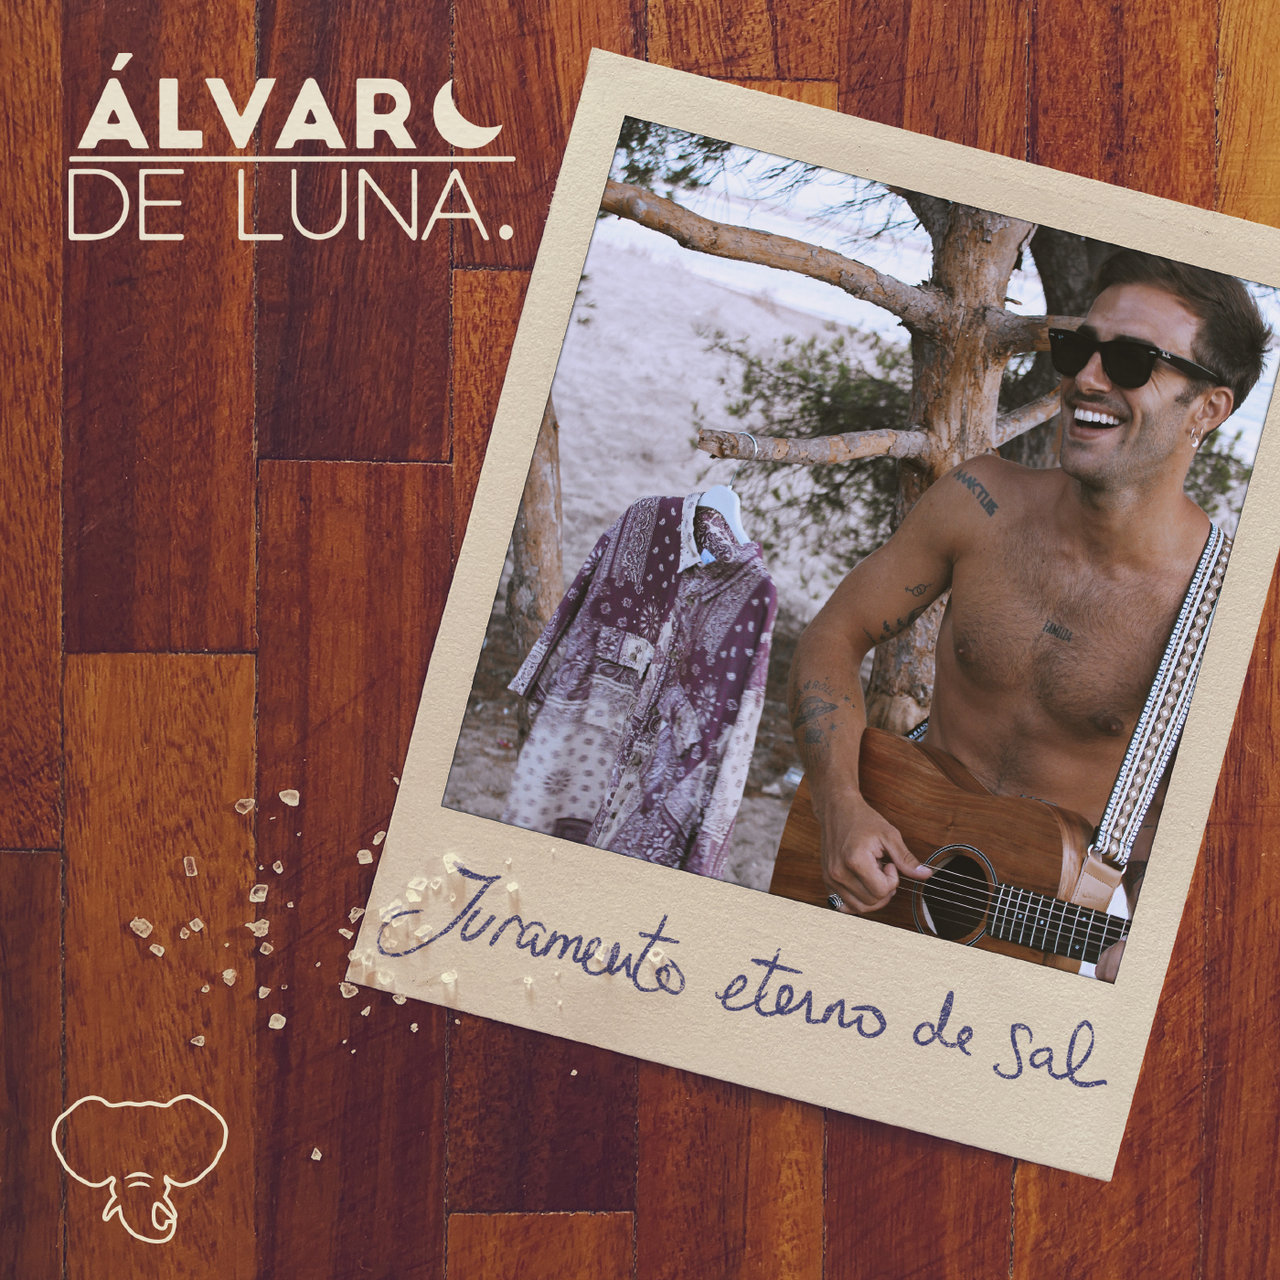 Álvaro de Luna Juramento eterno de sal cover artwork